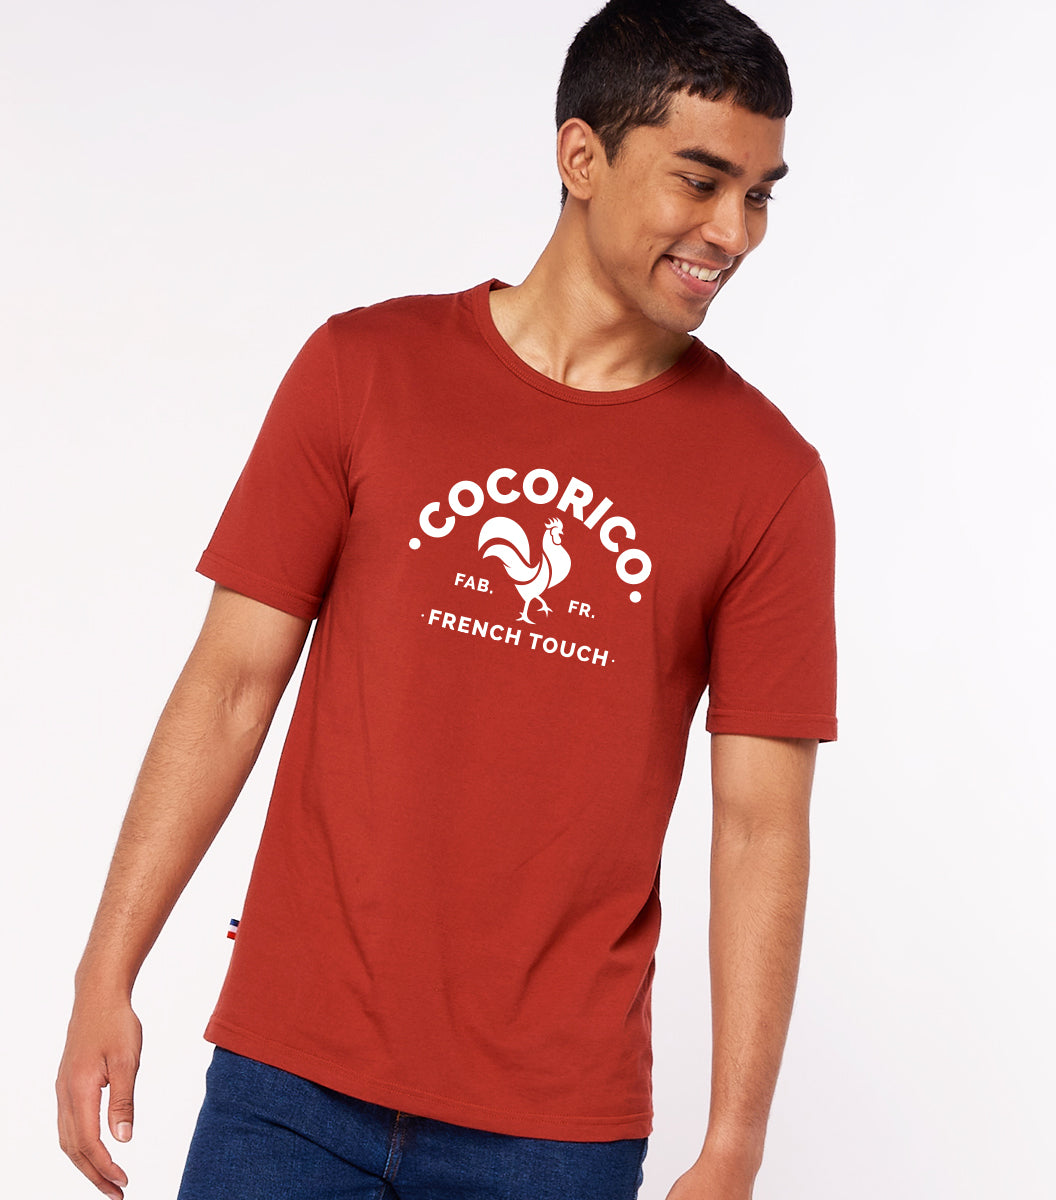 T-shirt Homme Terracotta - Coq Français